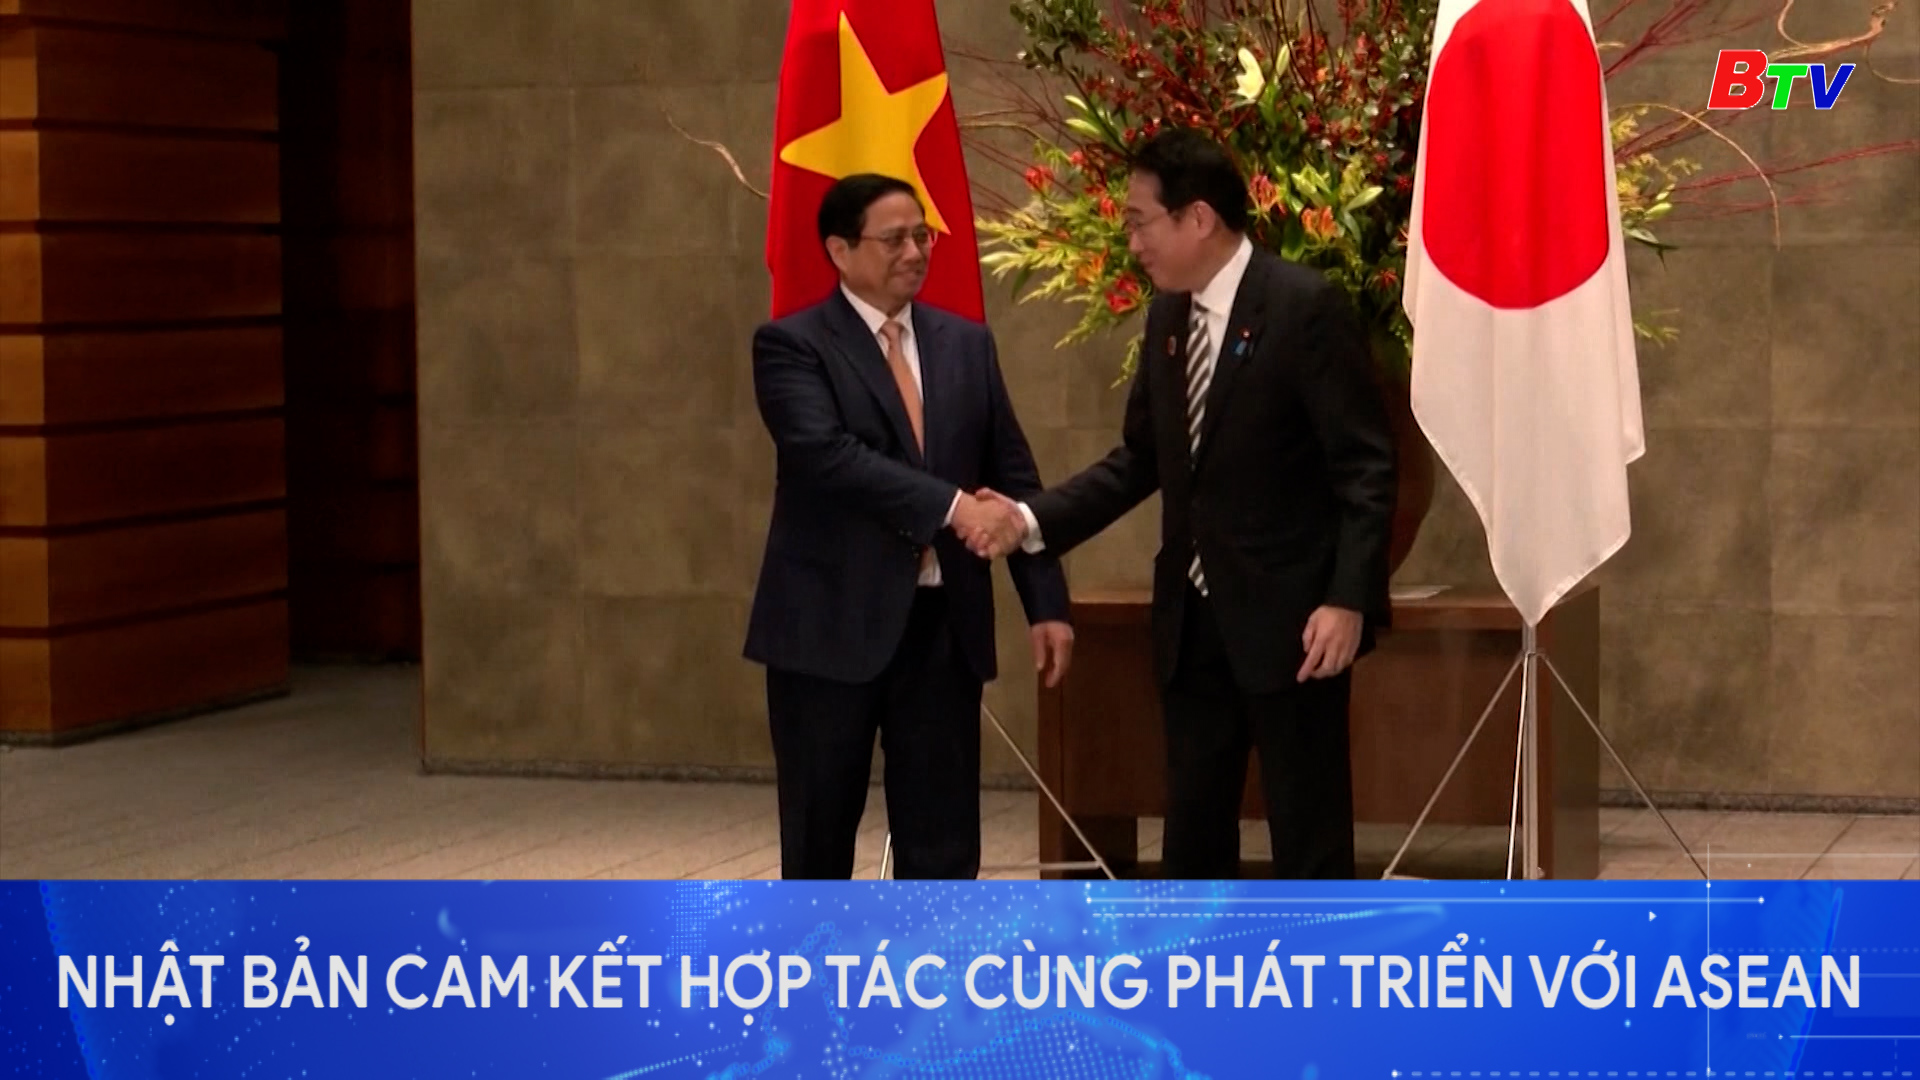 Nhật Bản cam kết hợp tác cùng phát triển với ASEAN